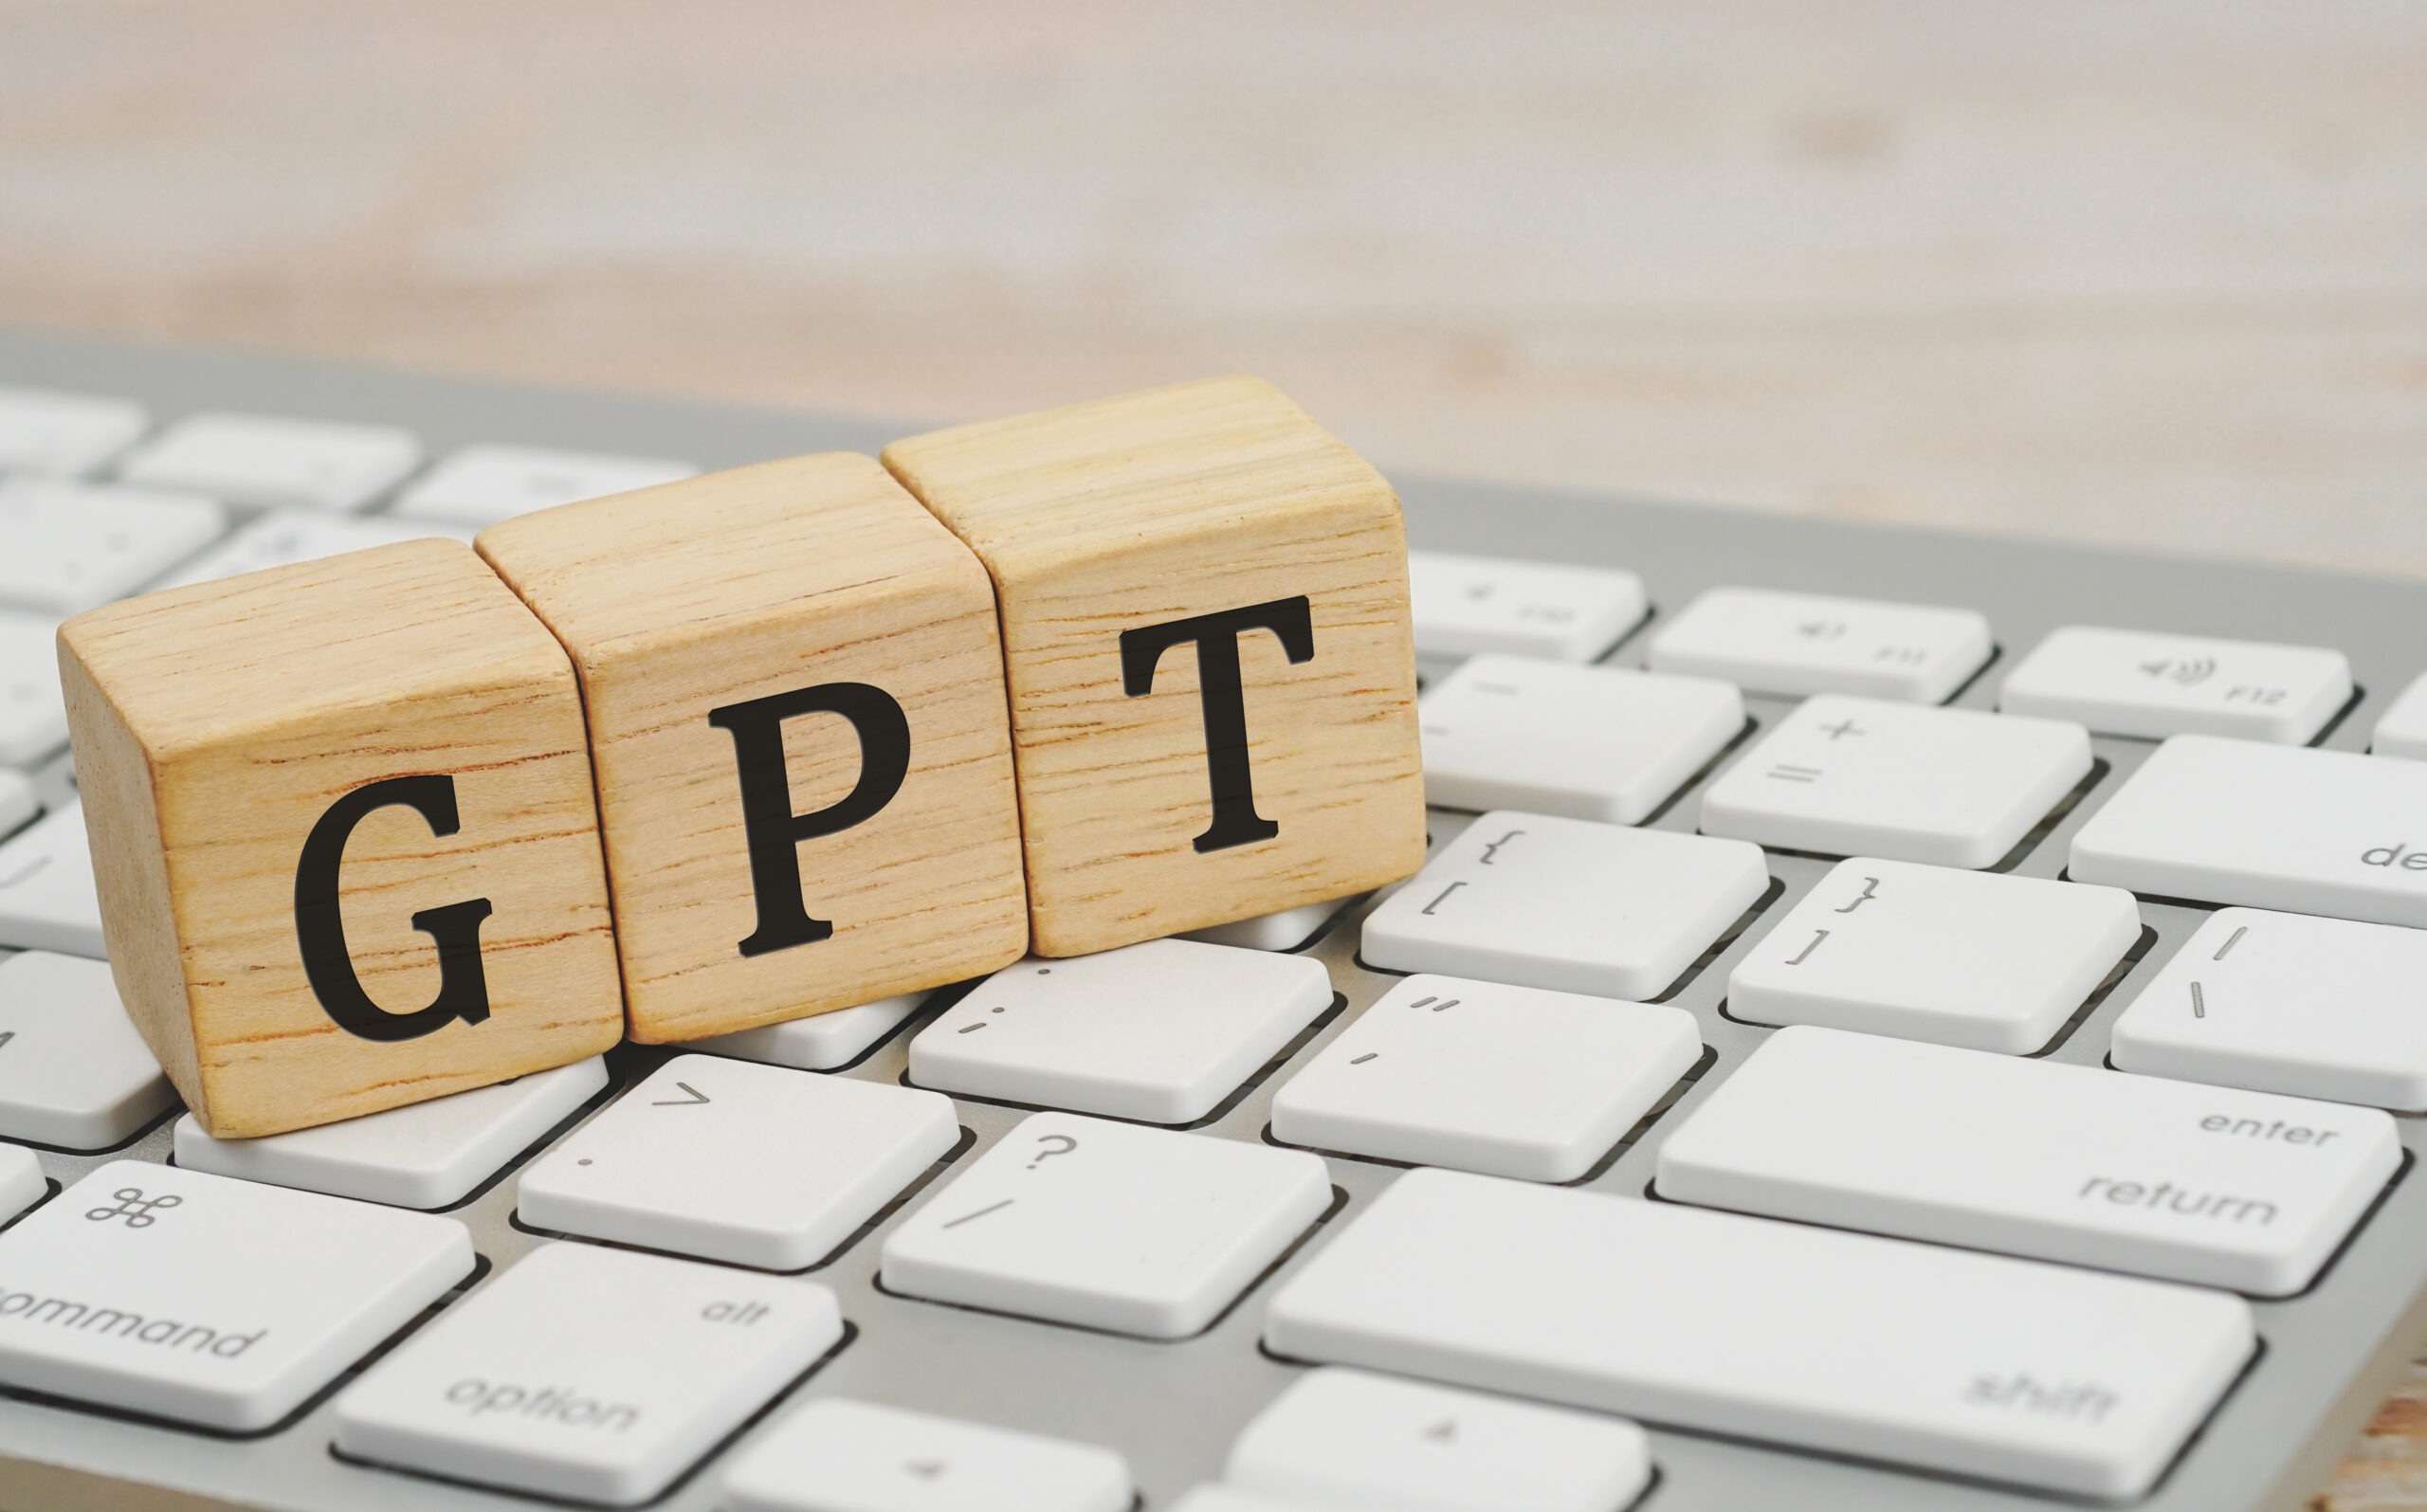 GPT spelled in wooden blocks on a keyboard